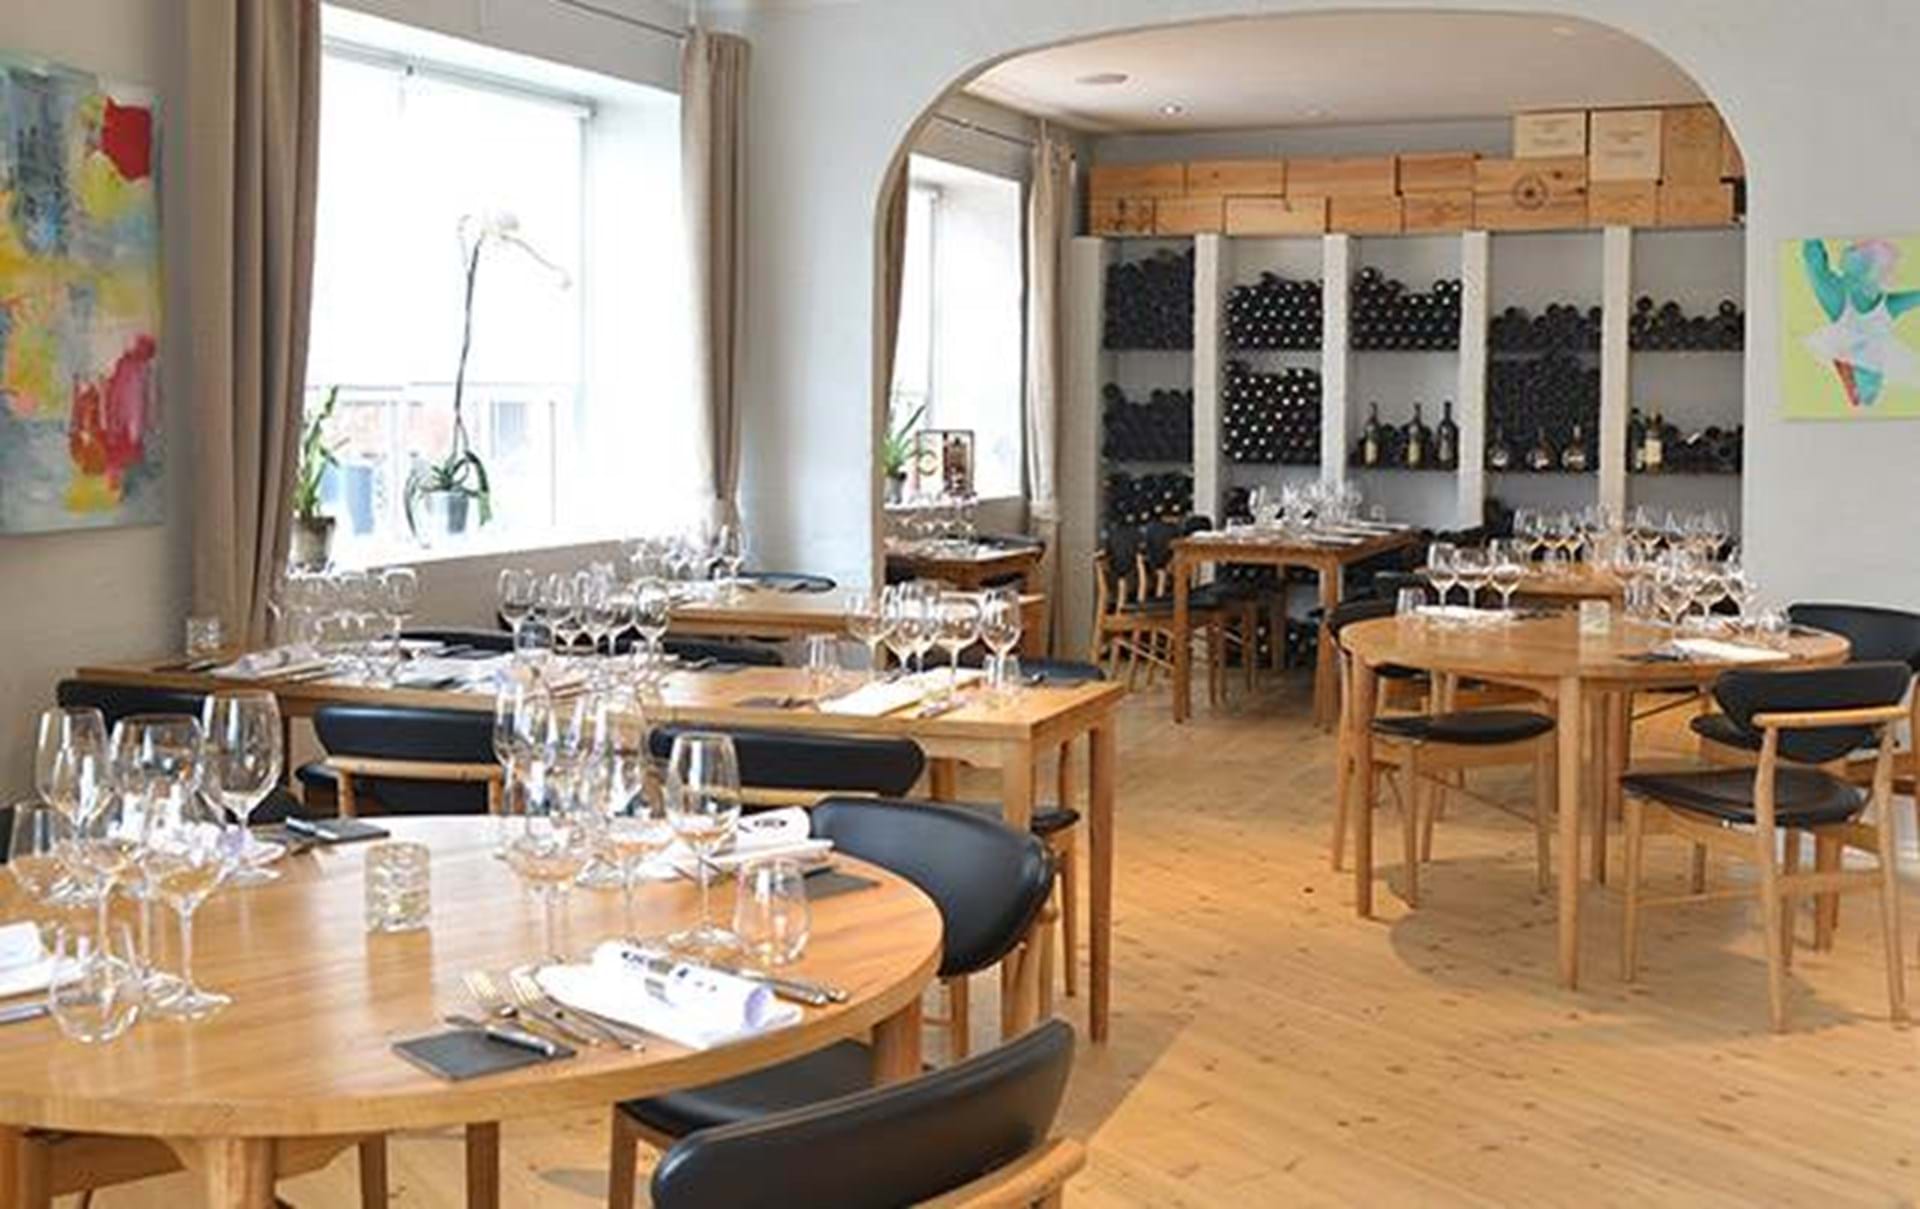 løfte op Ringlet krydstogt Guide: 8 gode restauranter i Århus - Euroman